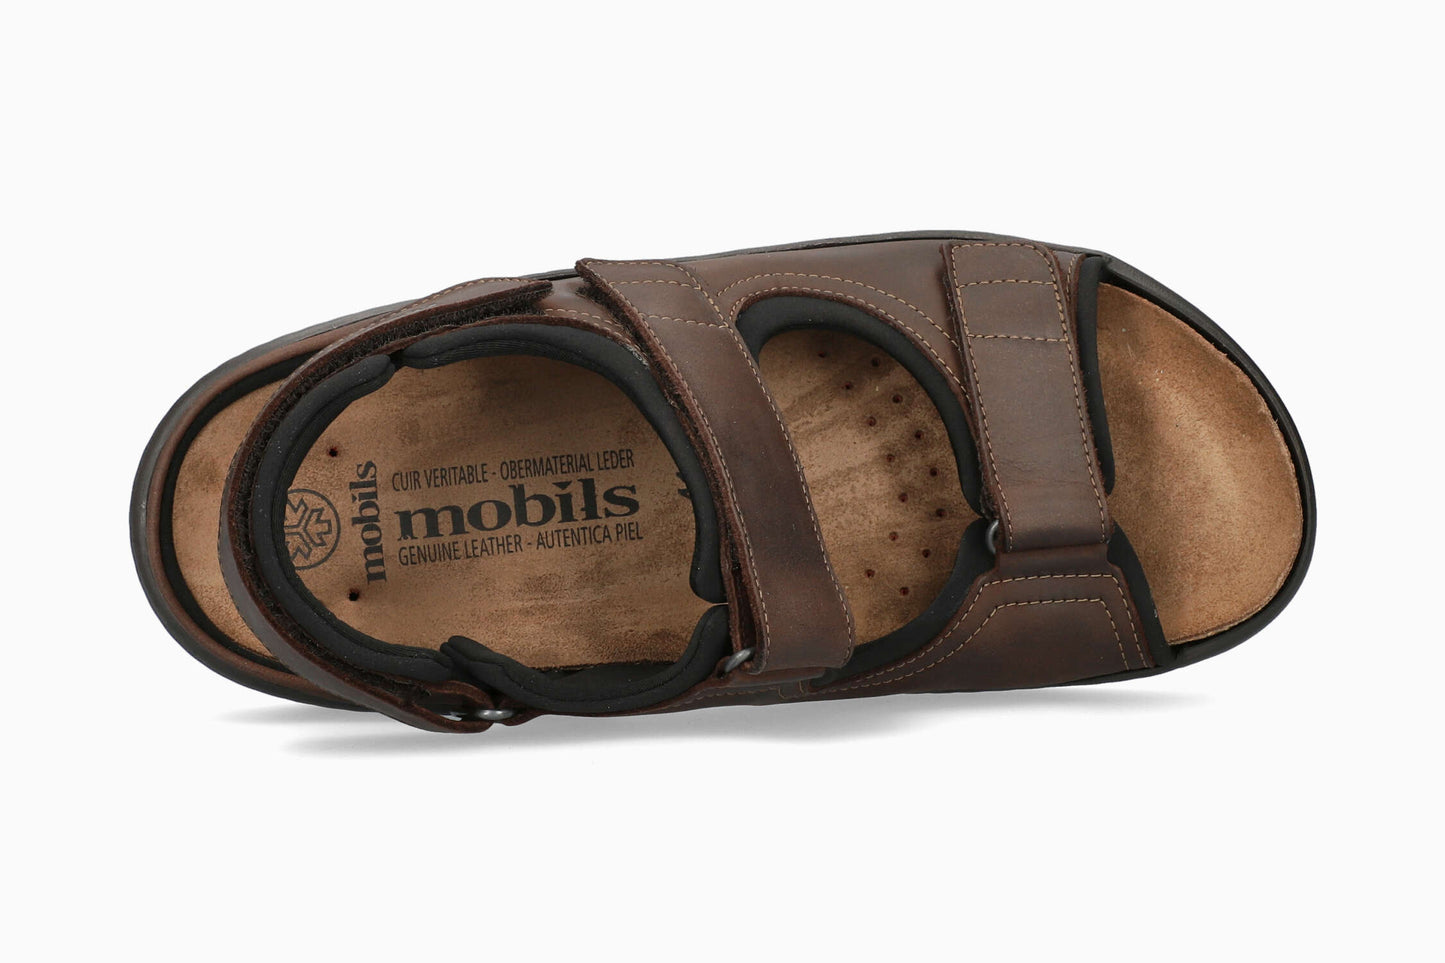 Mobils Valden Men's Sandal Top